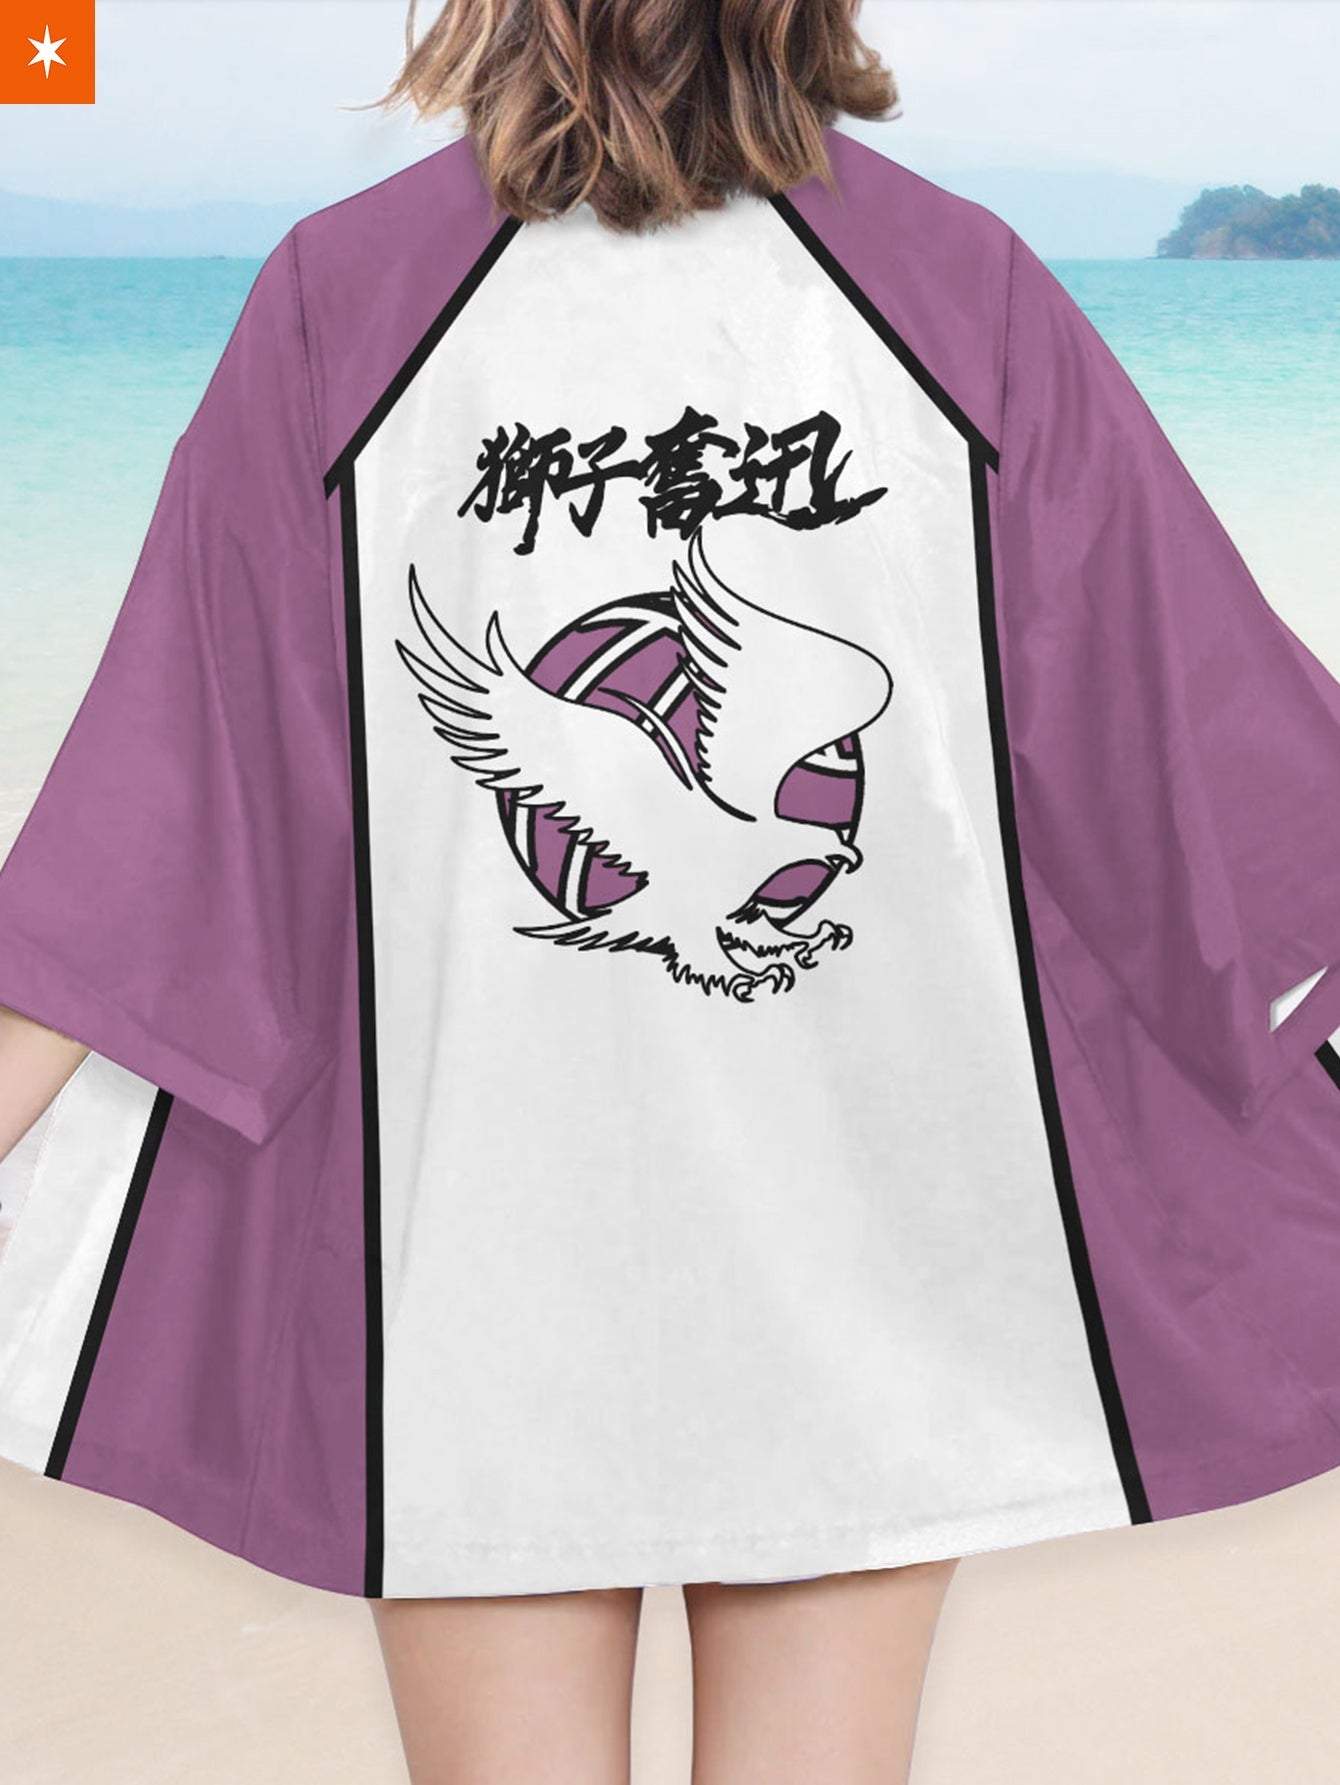 Fandomaniax - Shiratorizawa High Kimono